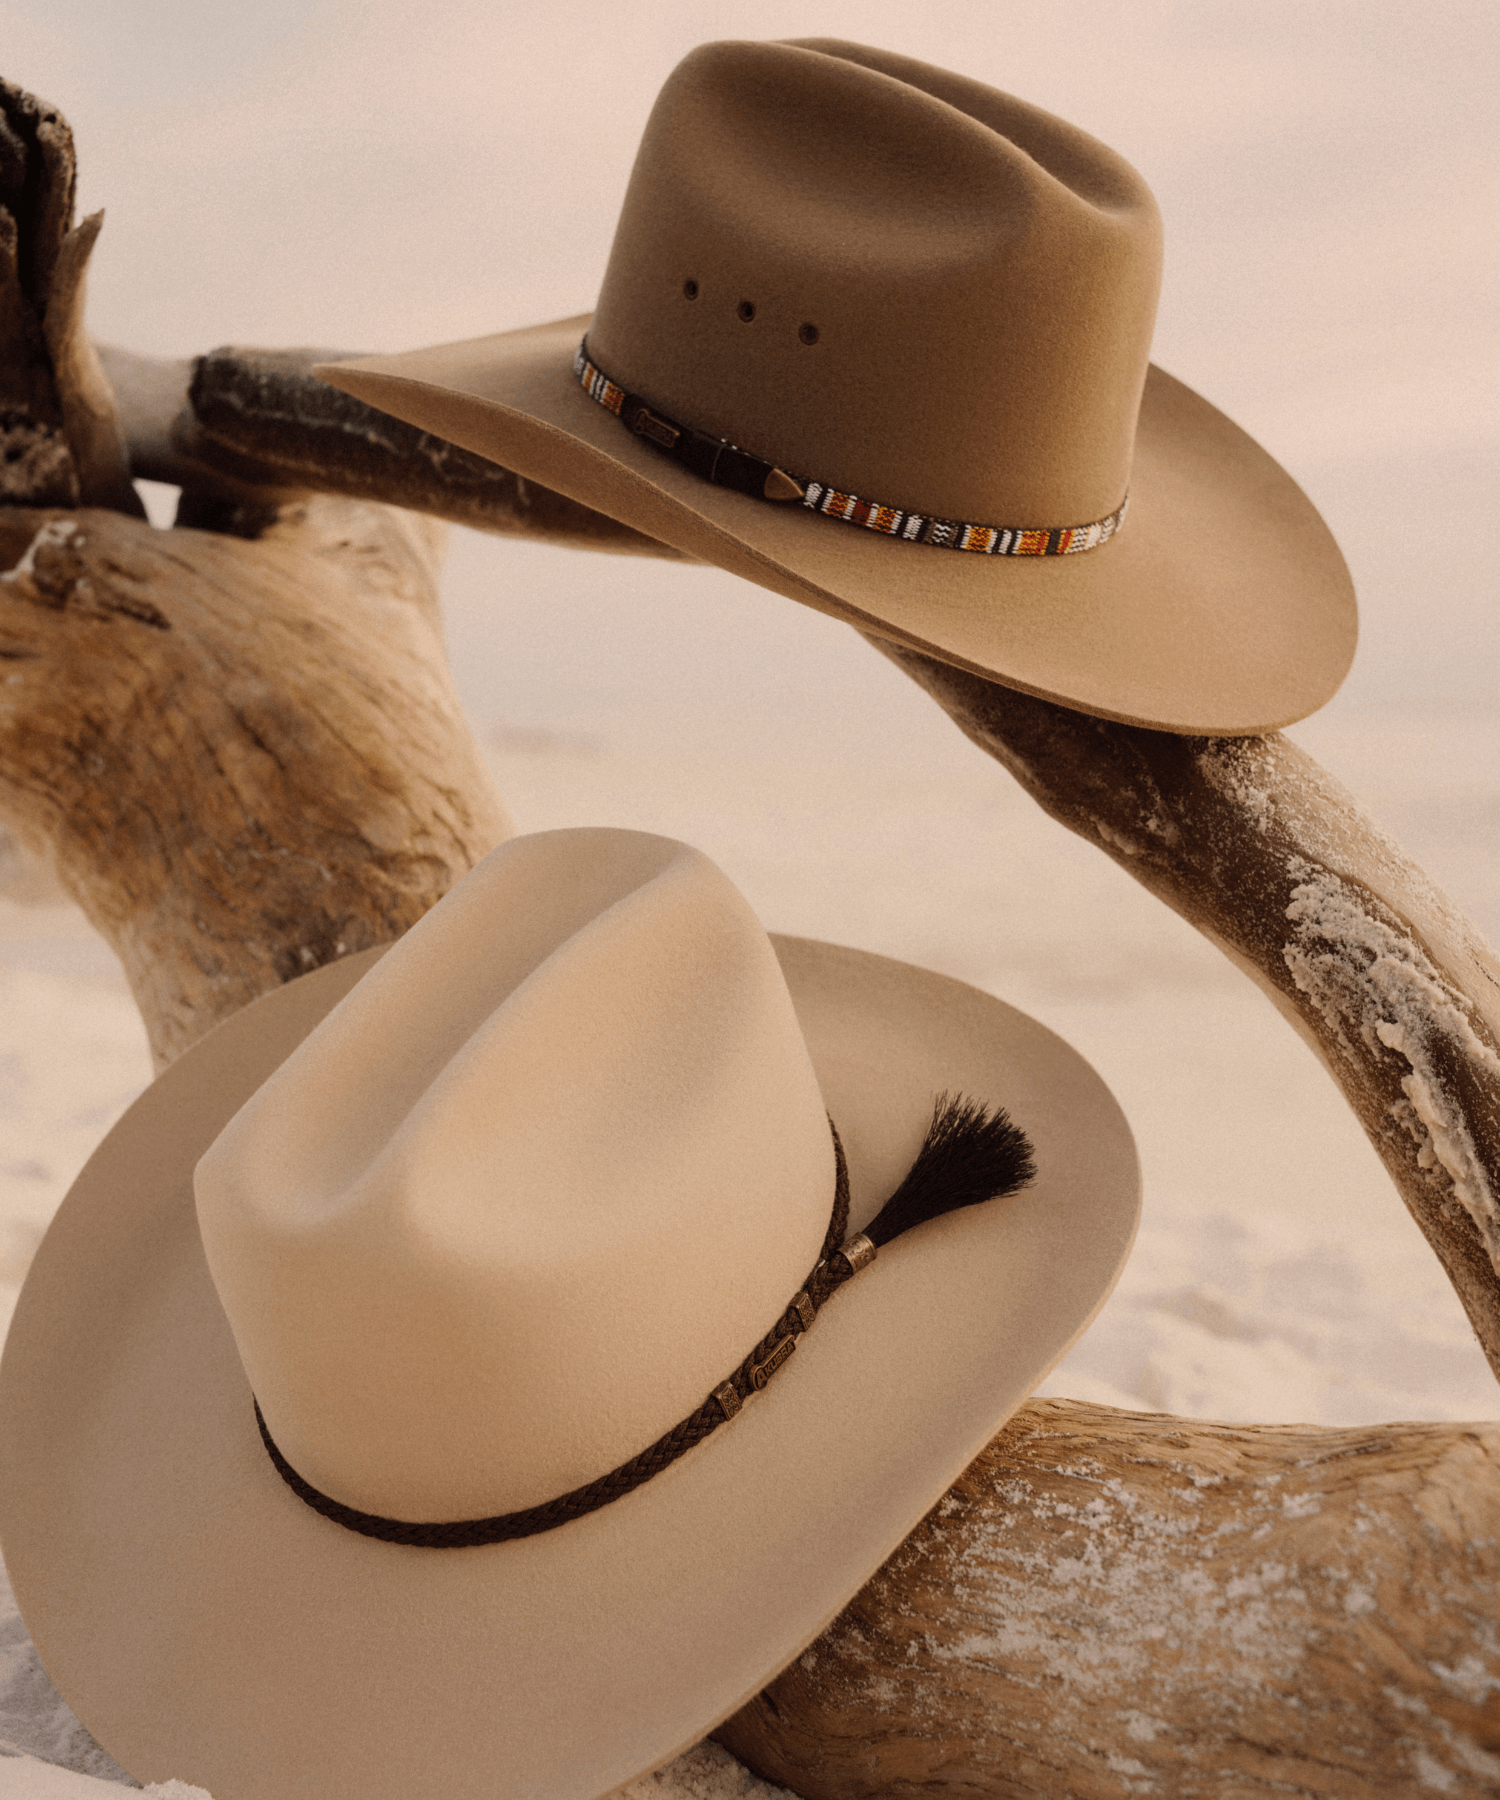 Akubra Hats - Australian Made since 1876